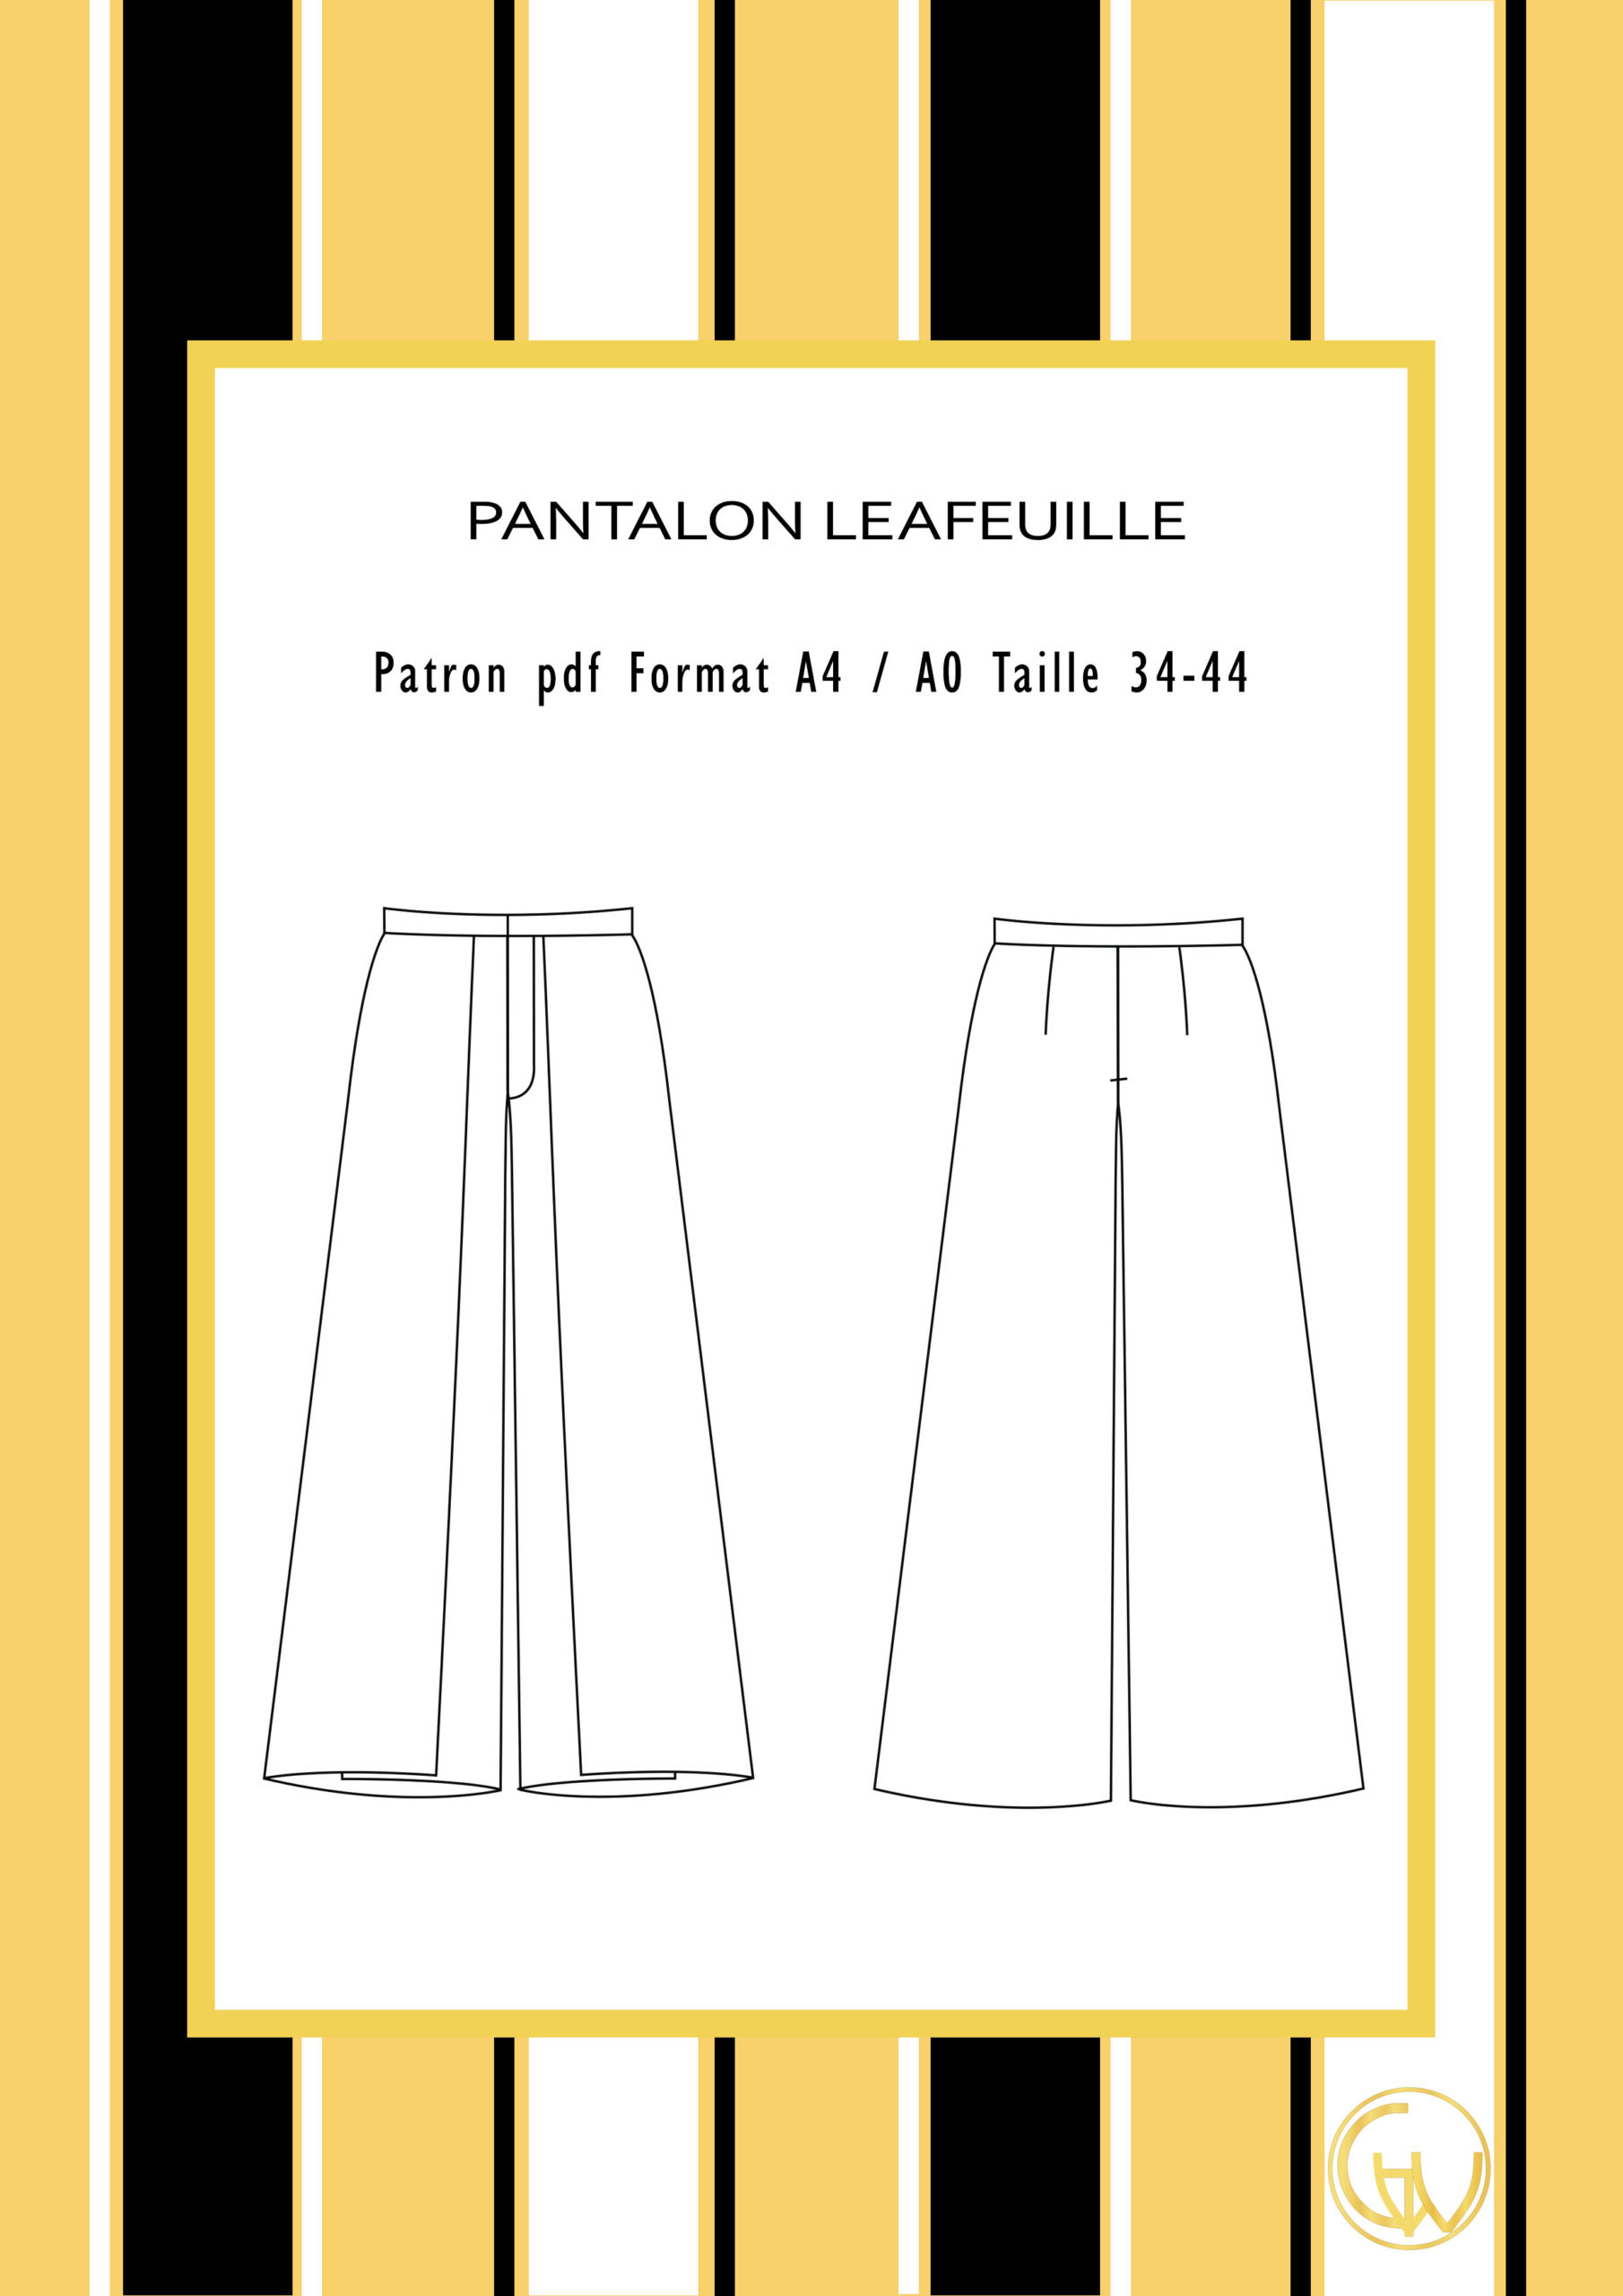 LE PANTALON POUR FEMME - tuto et patron de couture / Leah Sewing